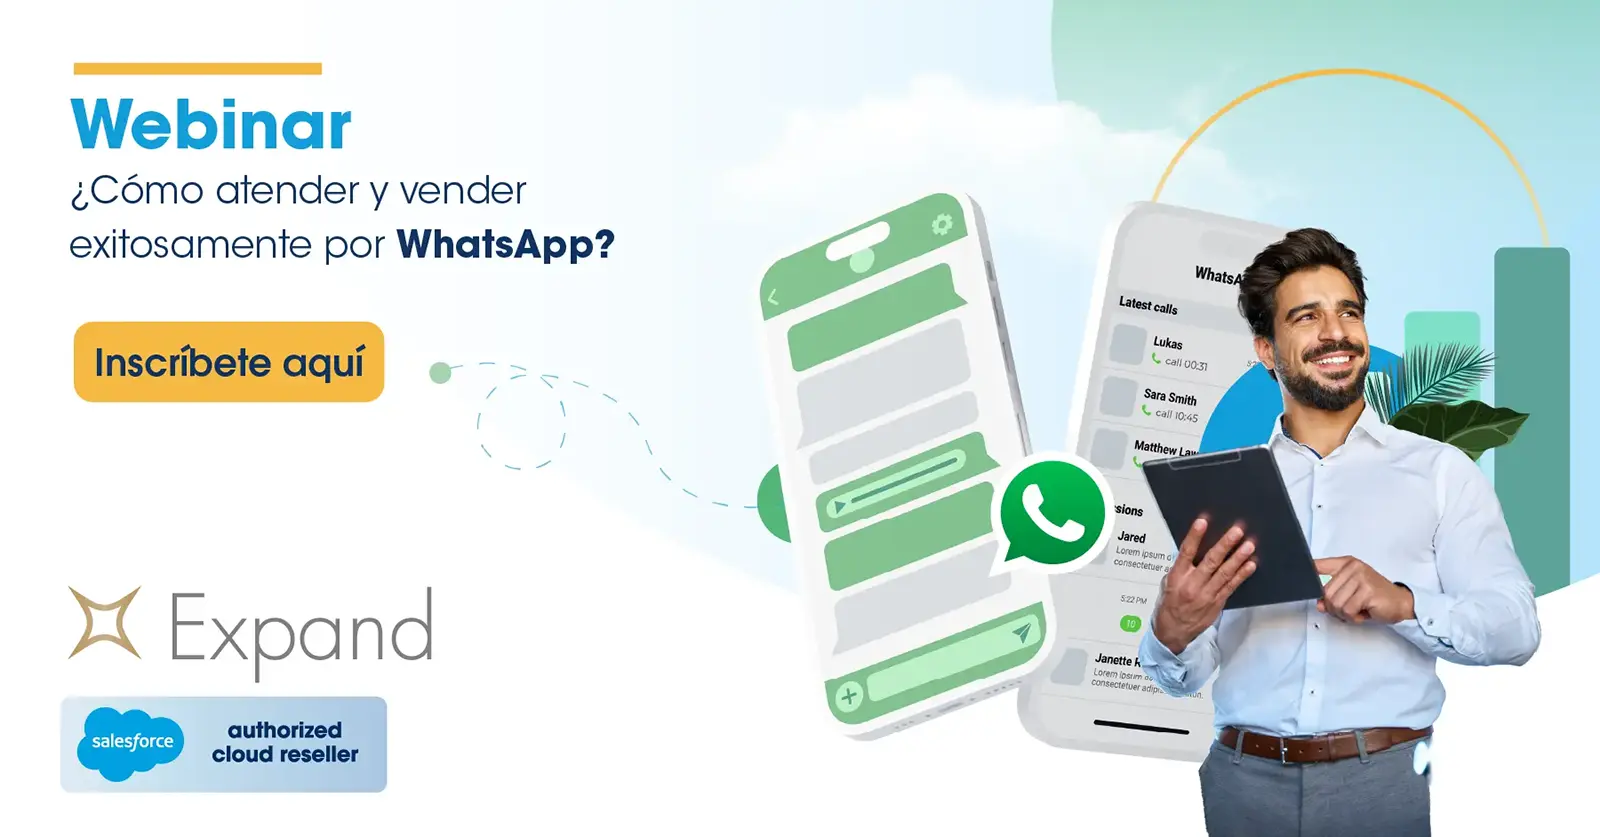 Webinar: Aprenda Cómo atender y vender exitosamente por WhatsApp